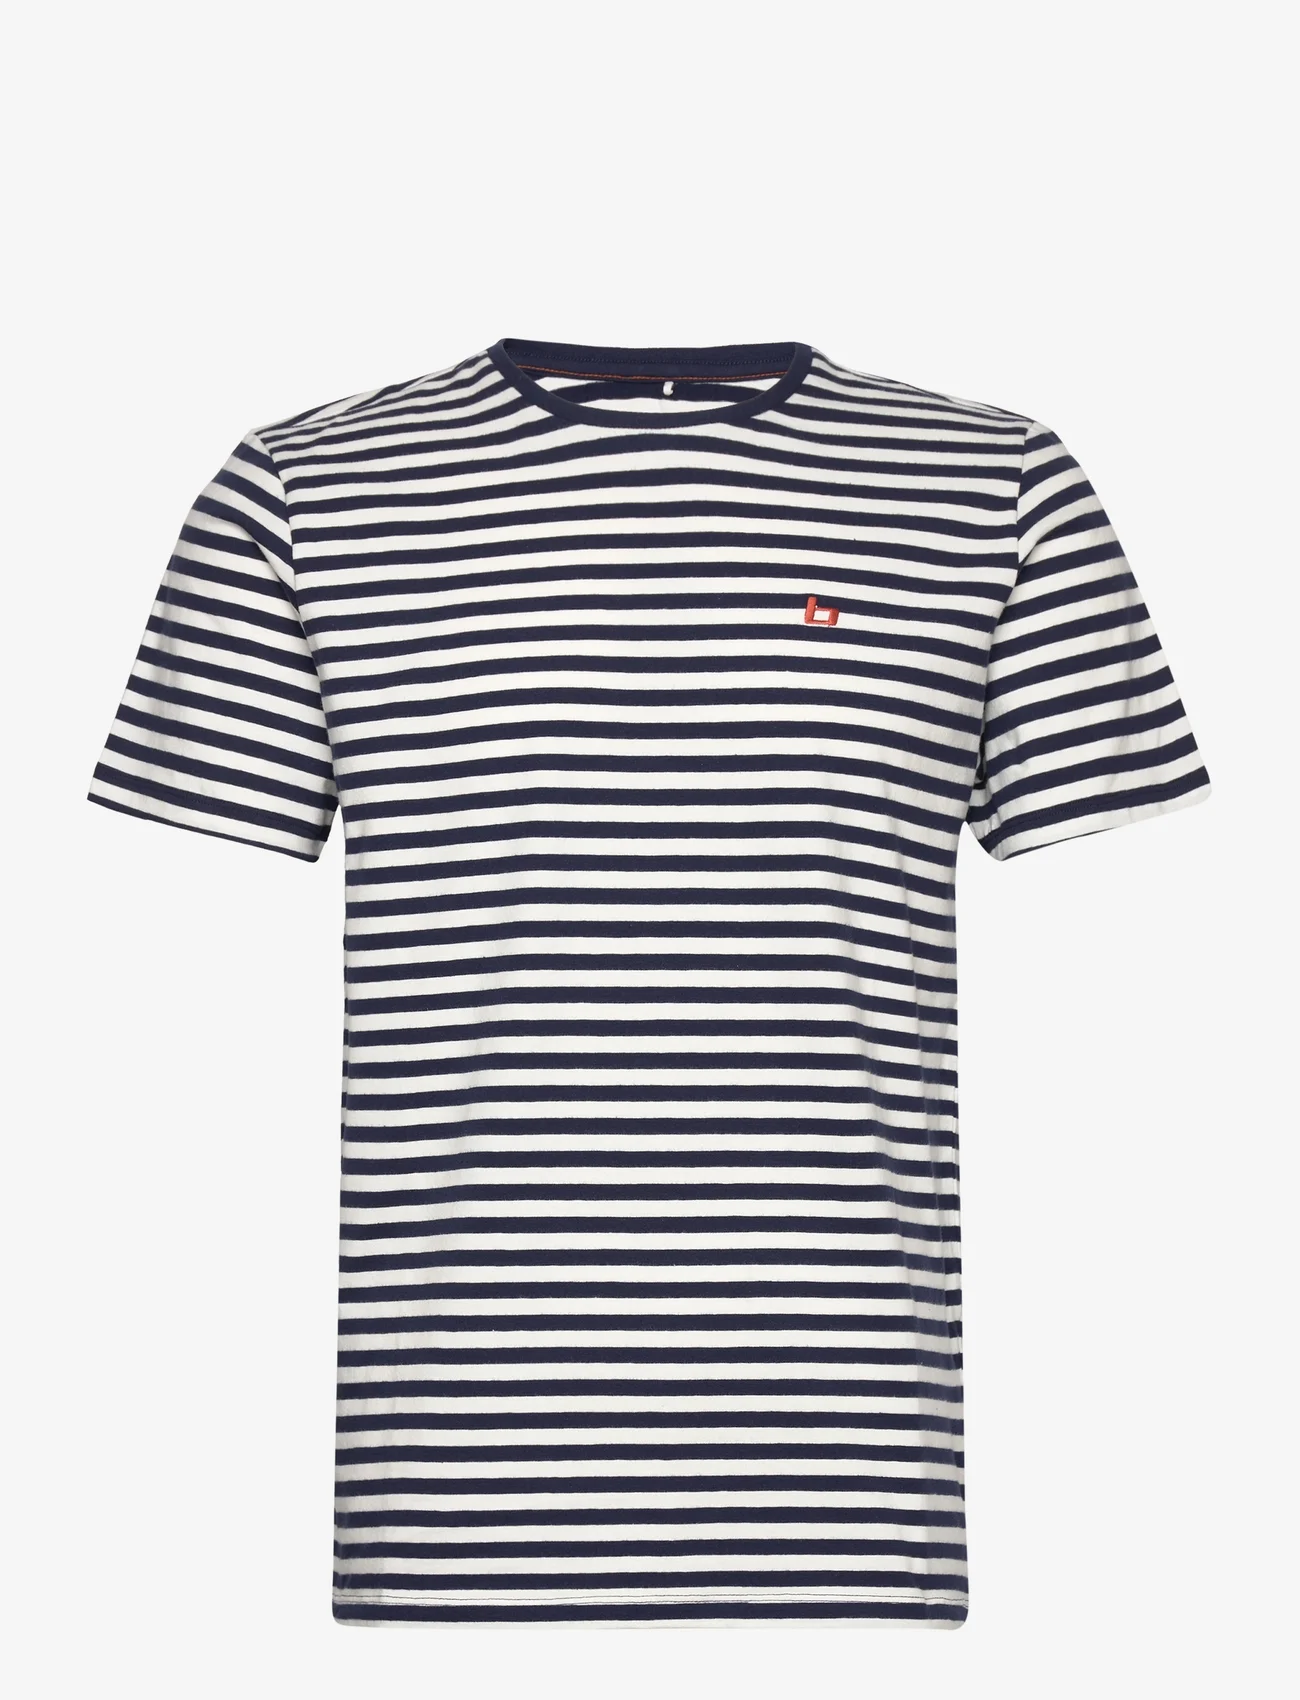 Blend Bhdinton Striped Tee – t-shirts – shoppa på Booztlet